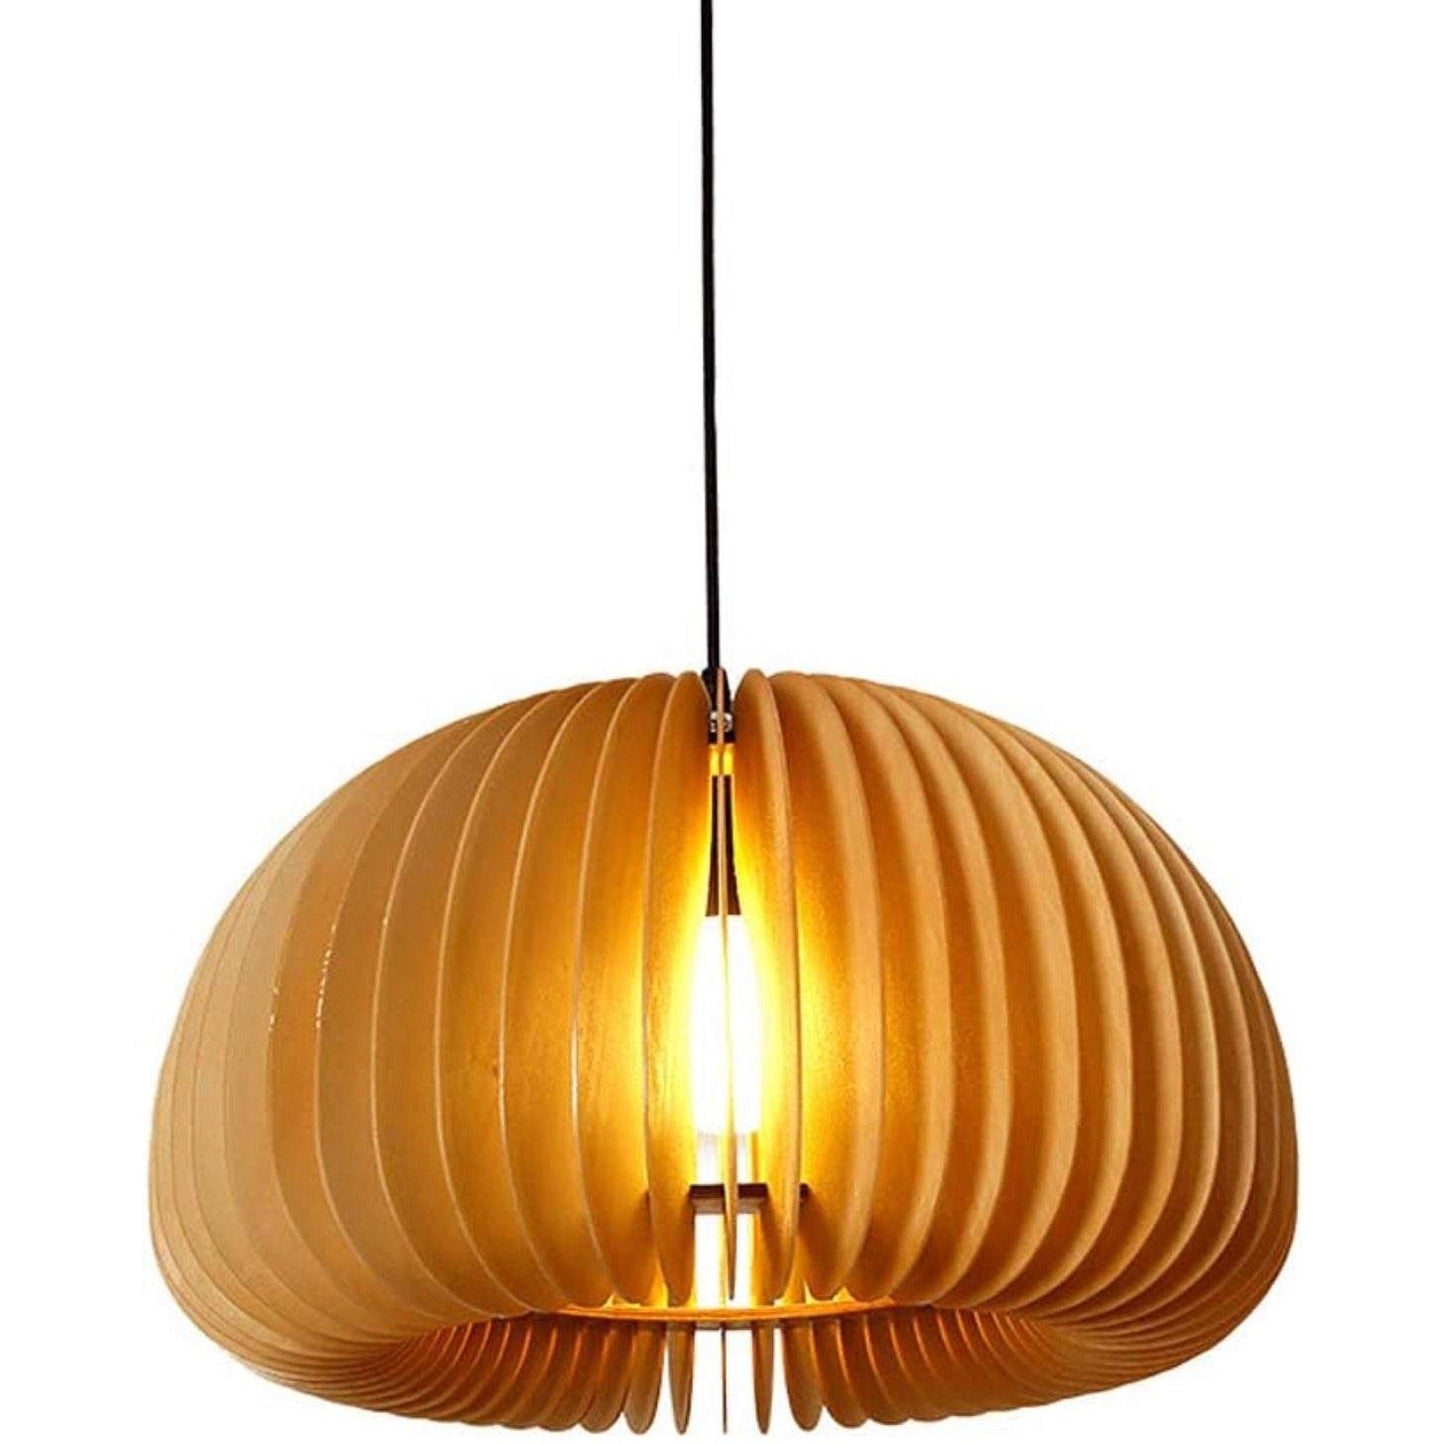 Indoor Chandelier Creative Wooden Ceiling Pendant Lamp - Selzalot